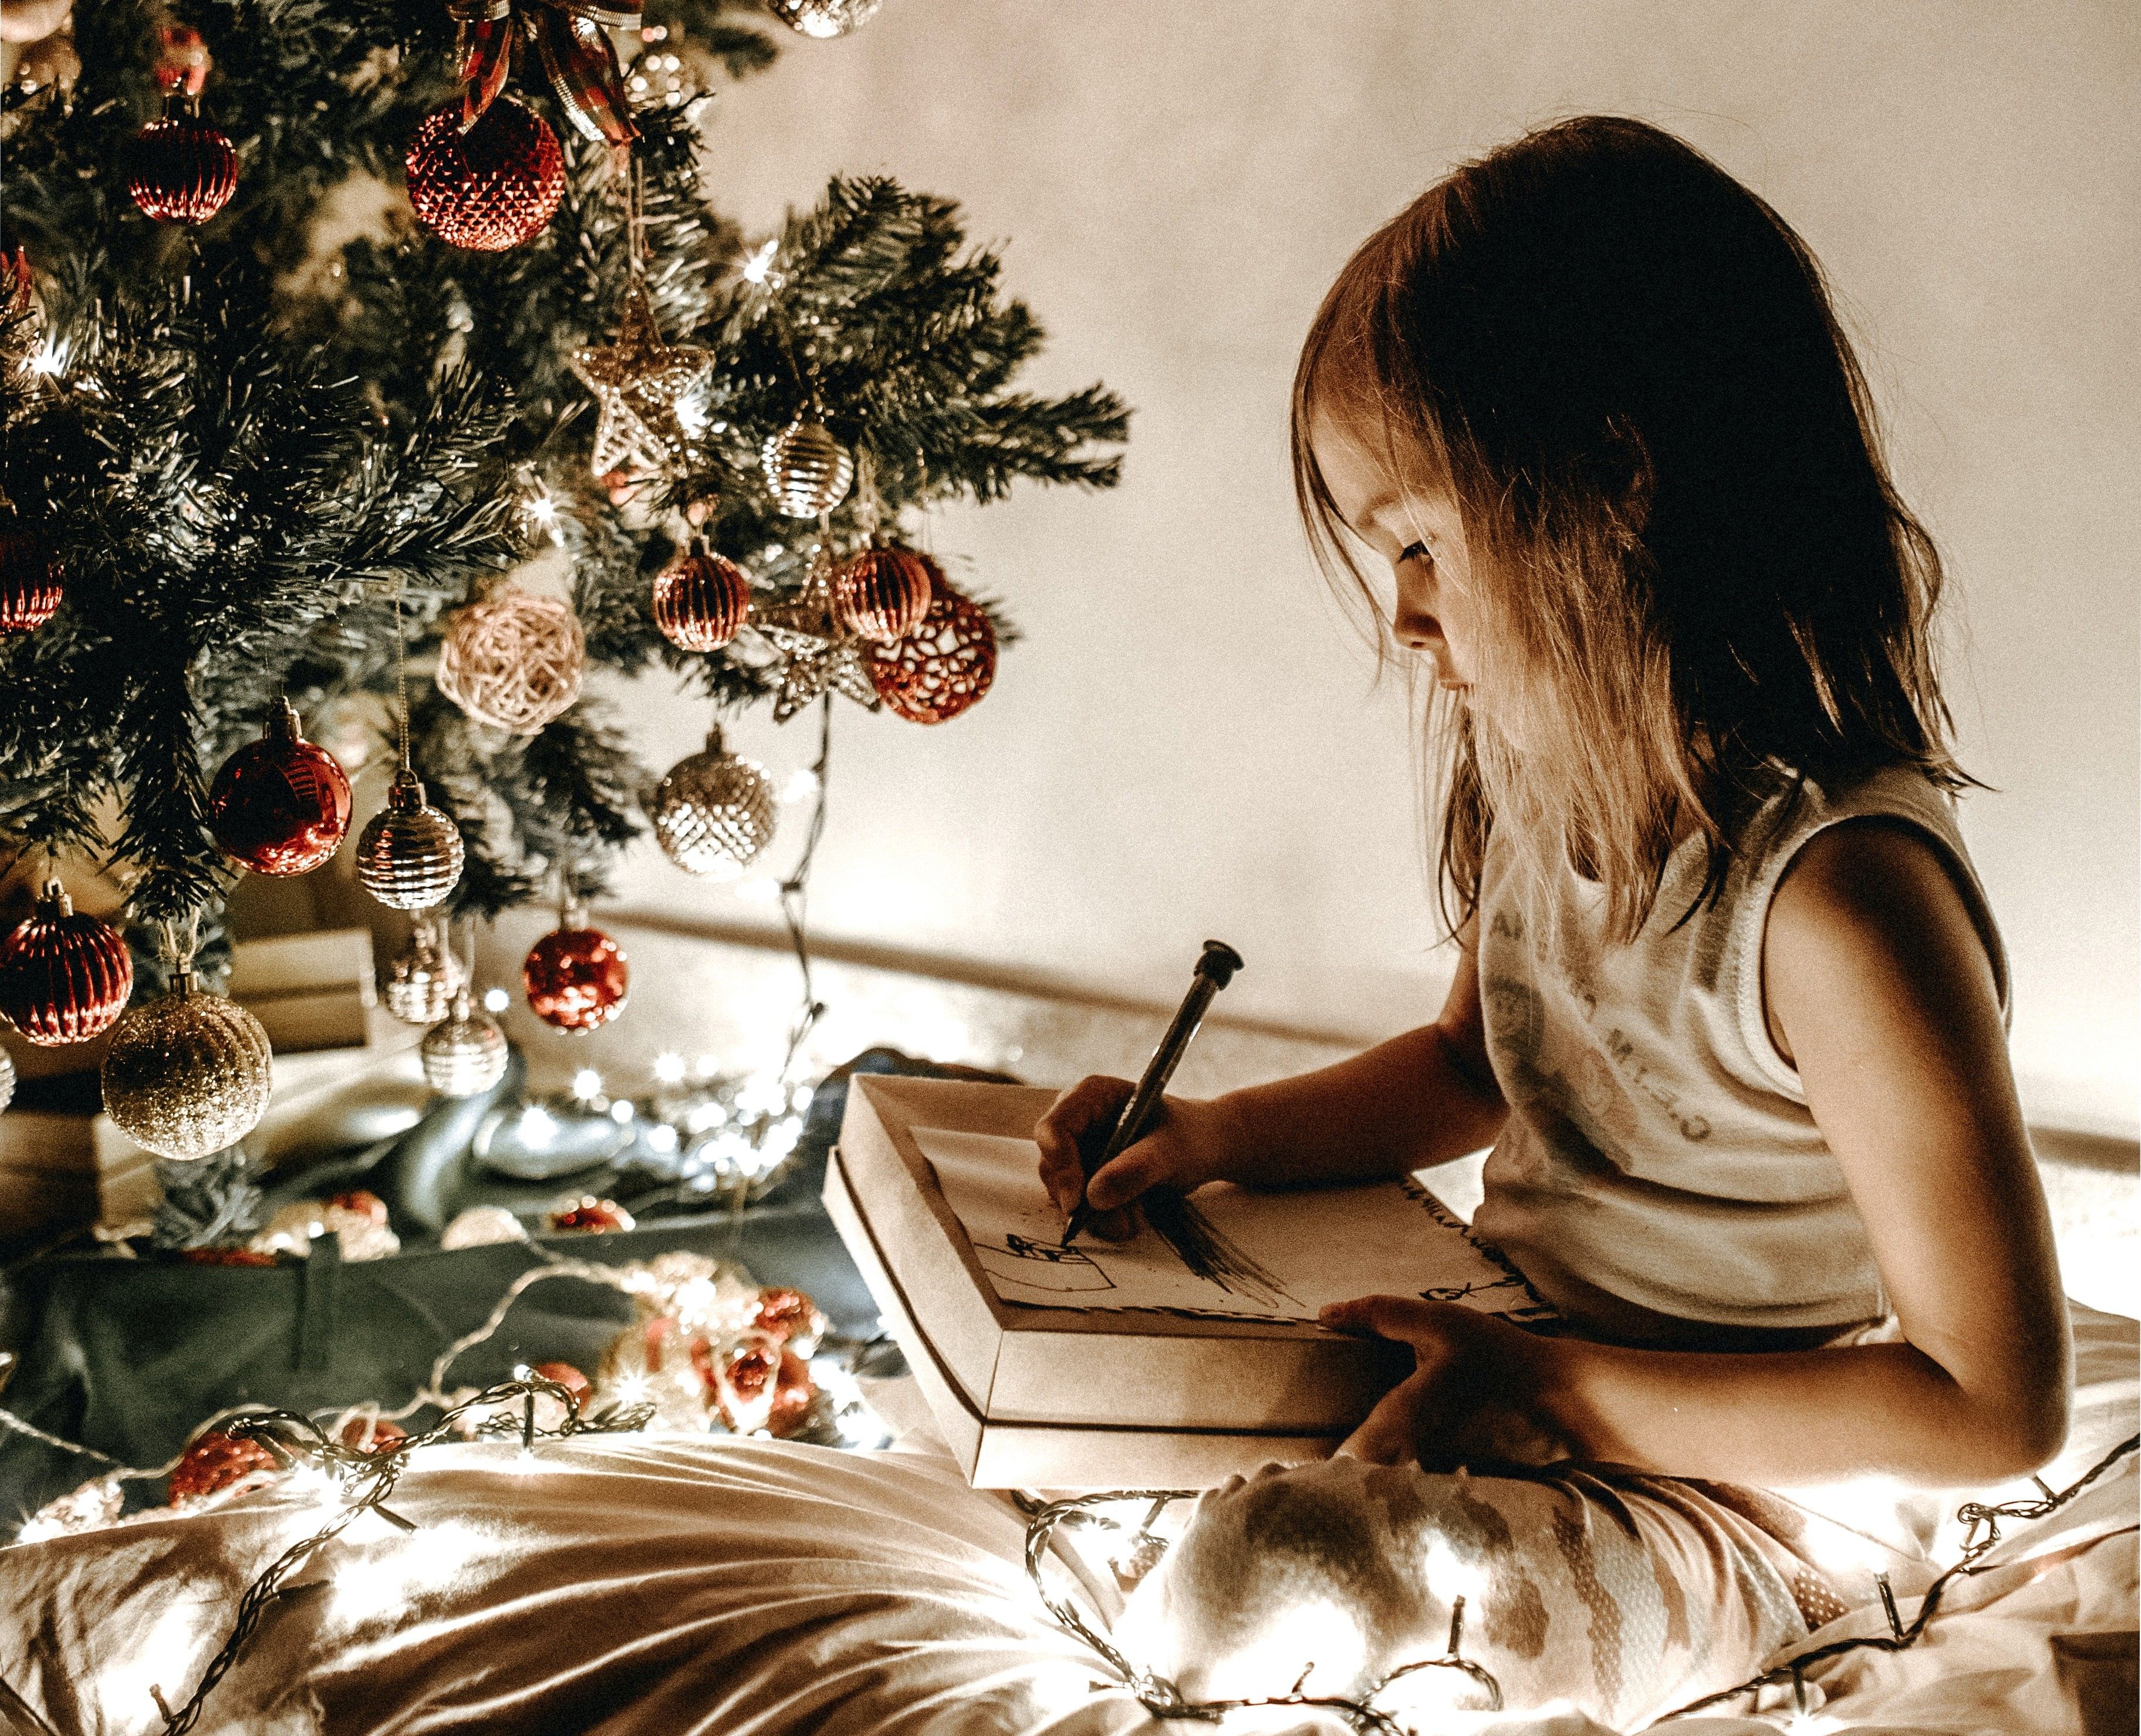 دختری برای بابانوئل لیست می نویسد.